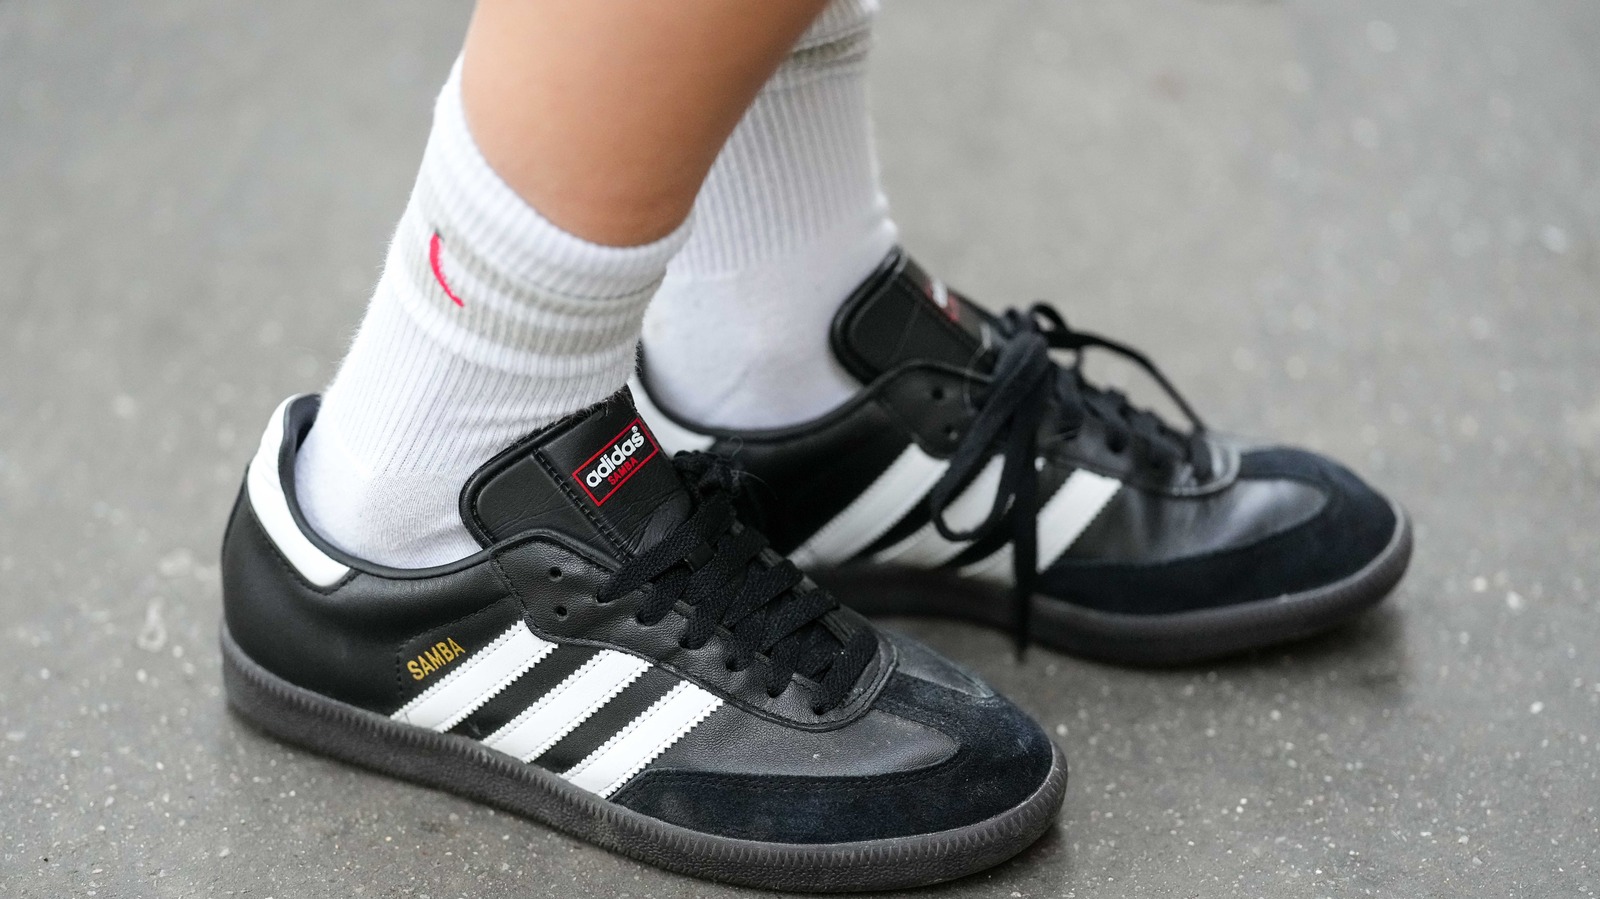 adidas | Shoes | Adidas Superstar Girls Shoes Size 4us | Poshmark